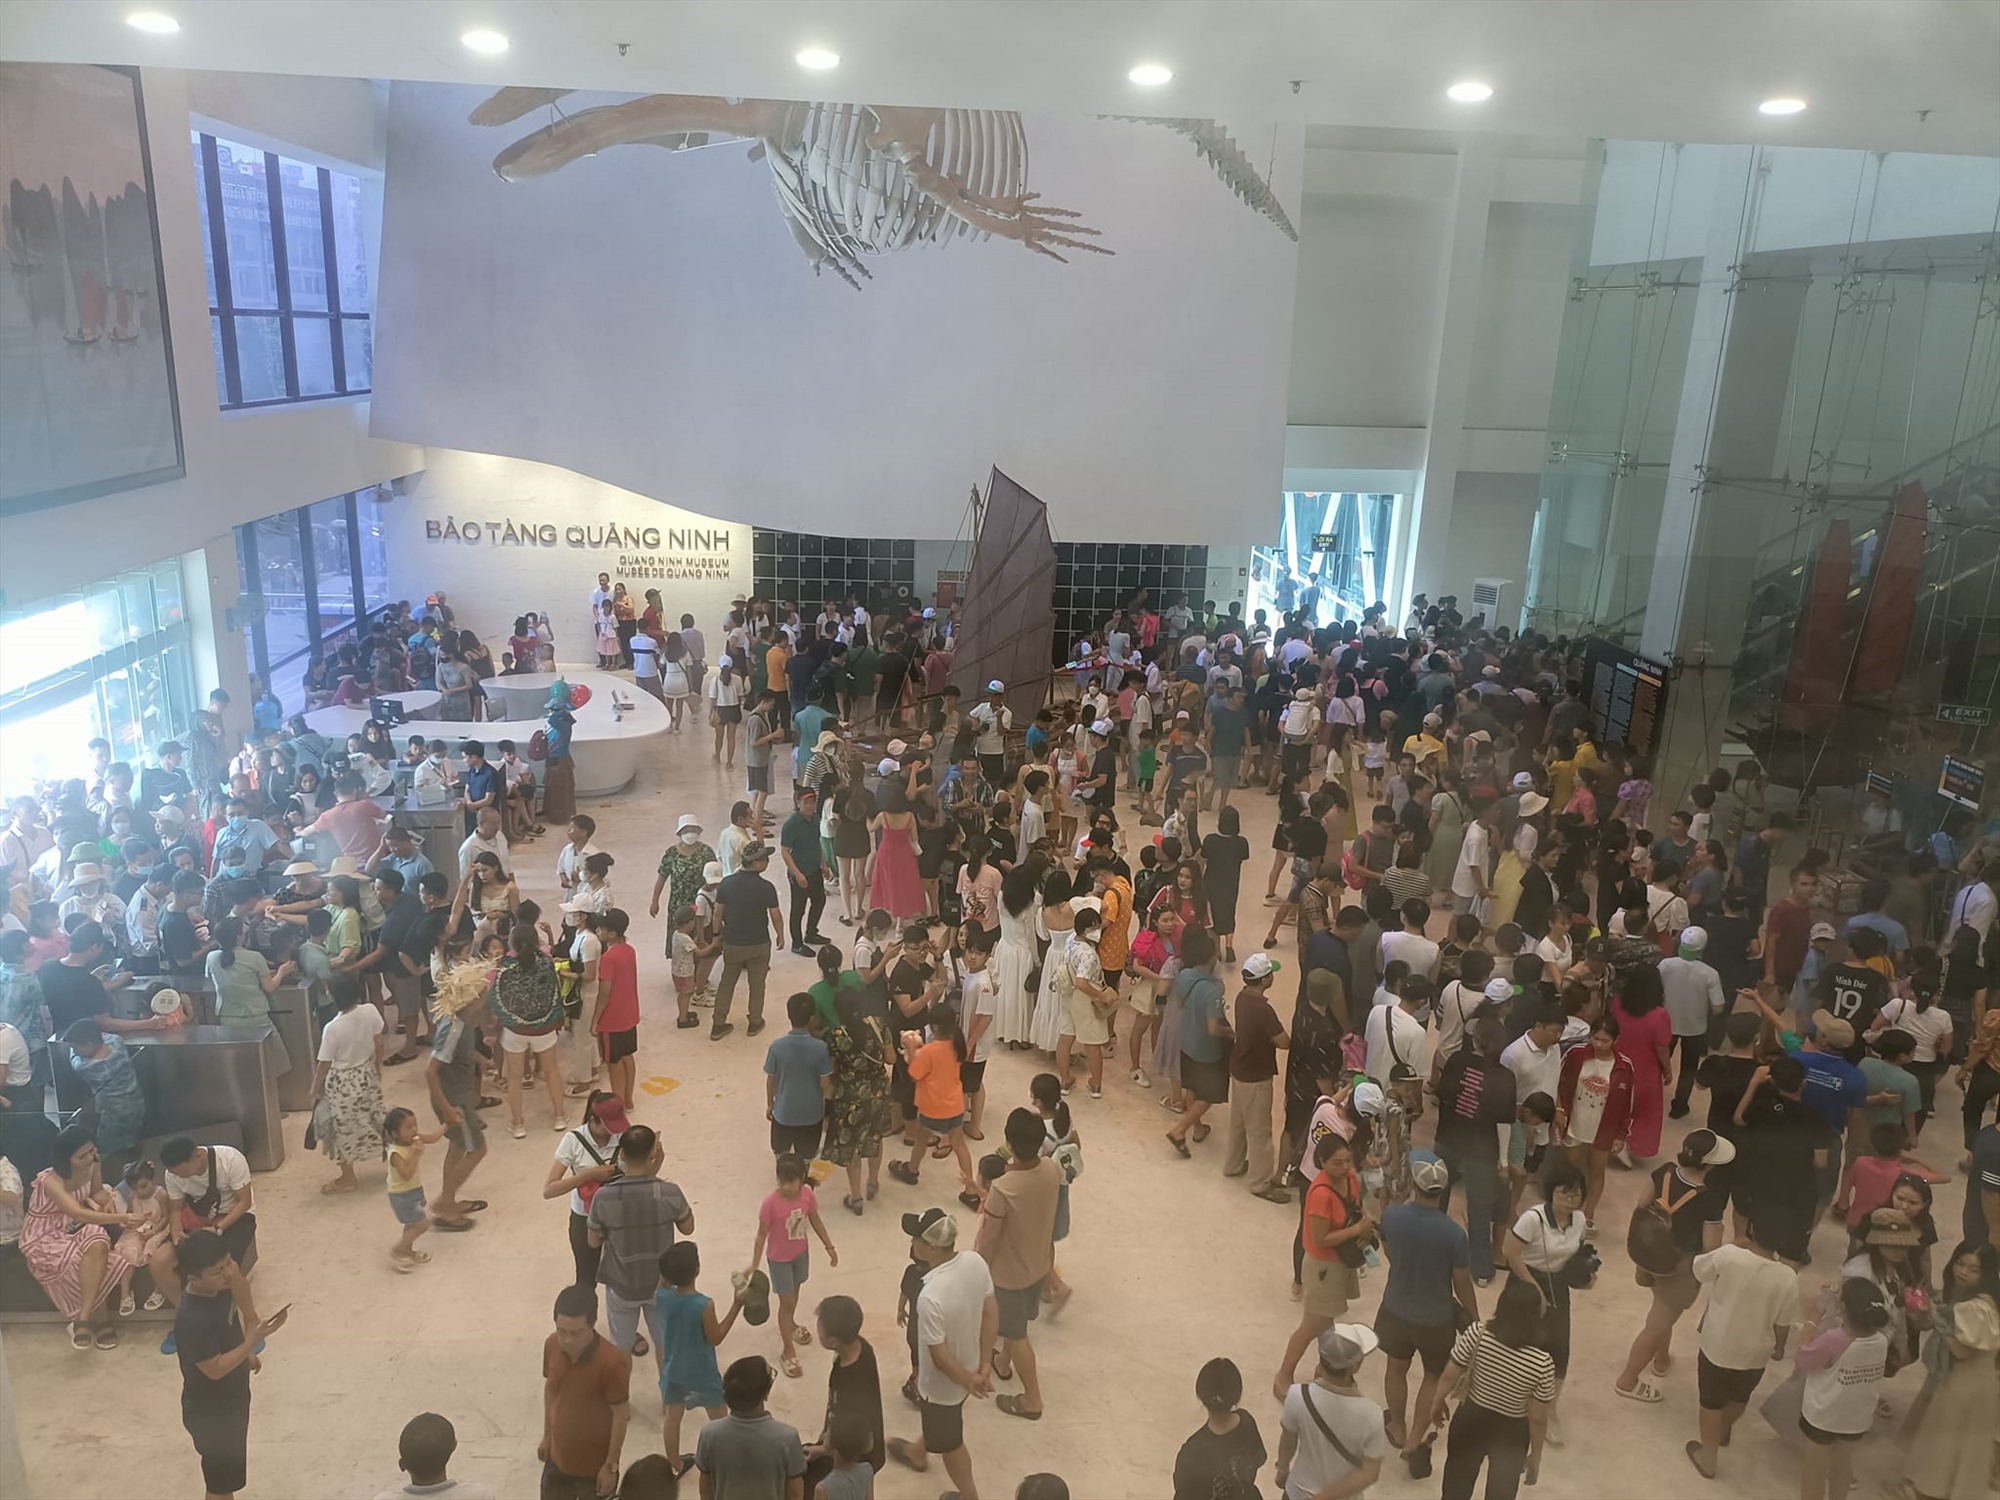 Bảo tàng Quảng Ninh đón 18.390 lượt khách từ 1.9 đến 12h ngày 3.9. Ảnh: Bảo tàng Quảng Ninh